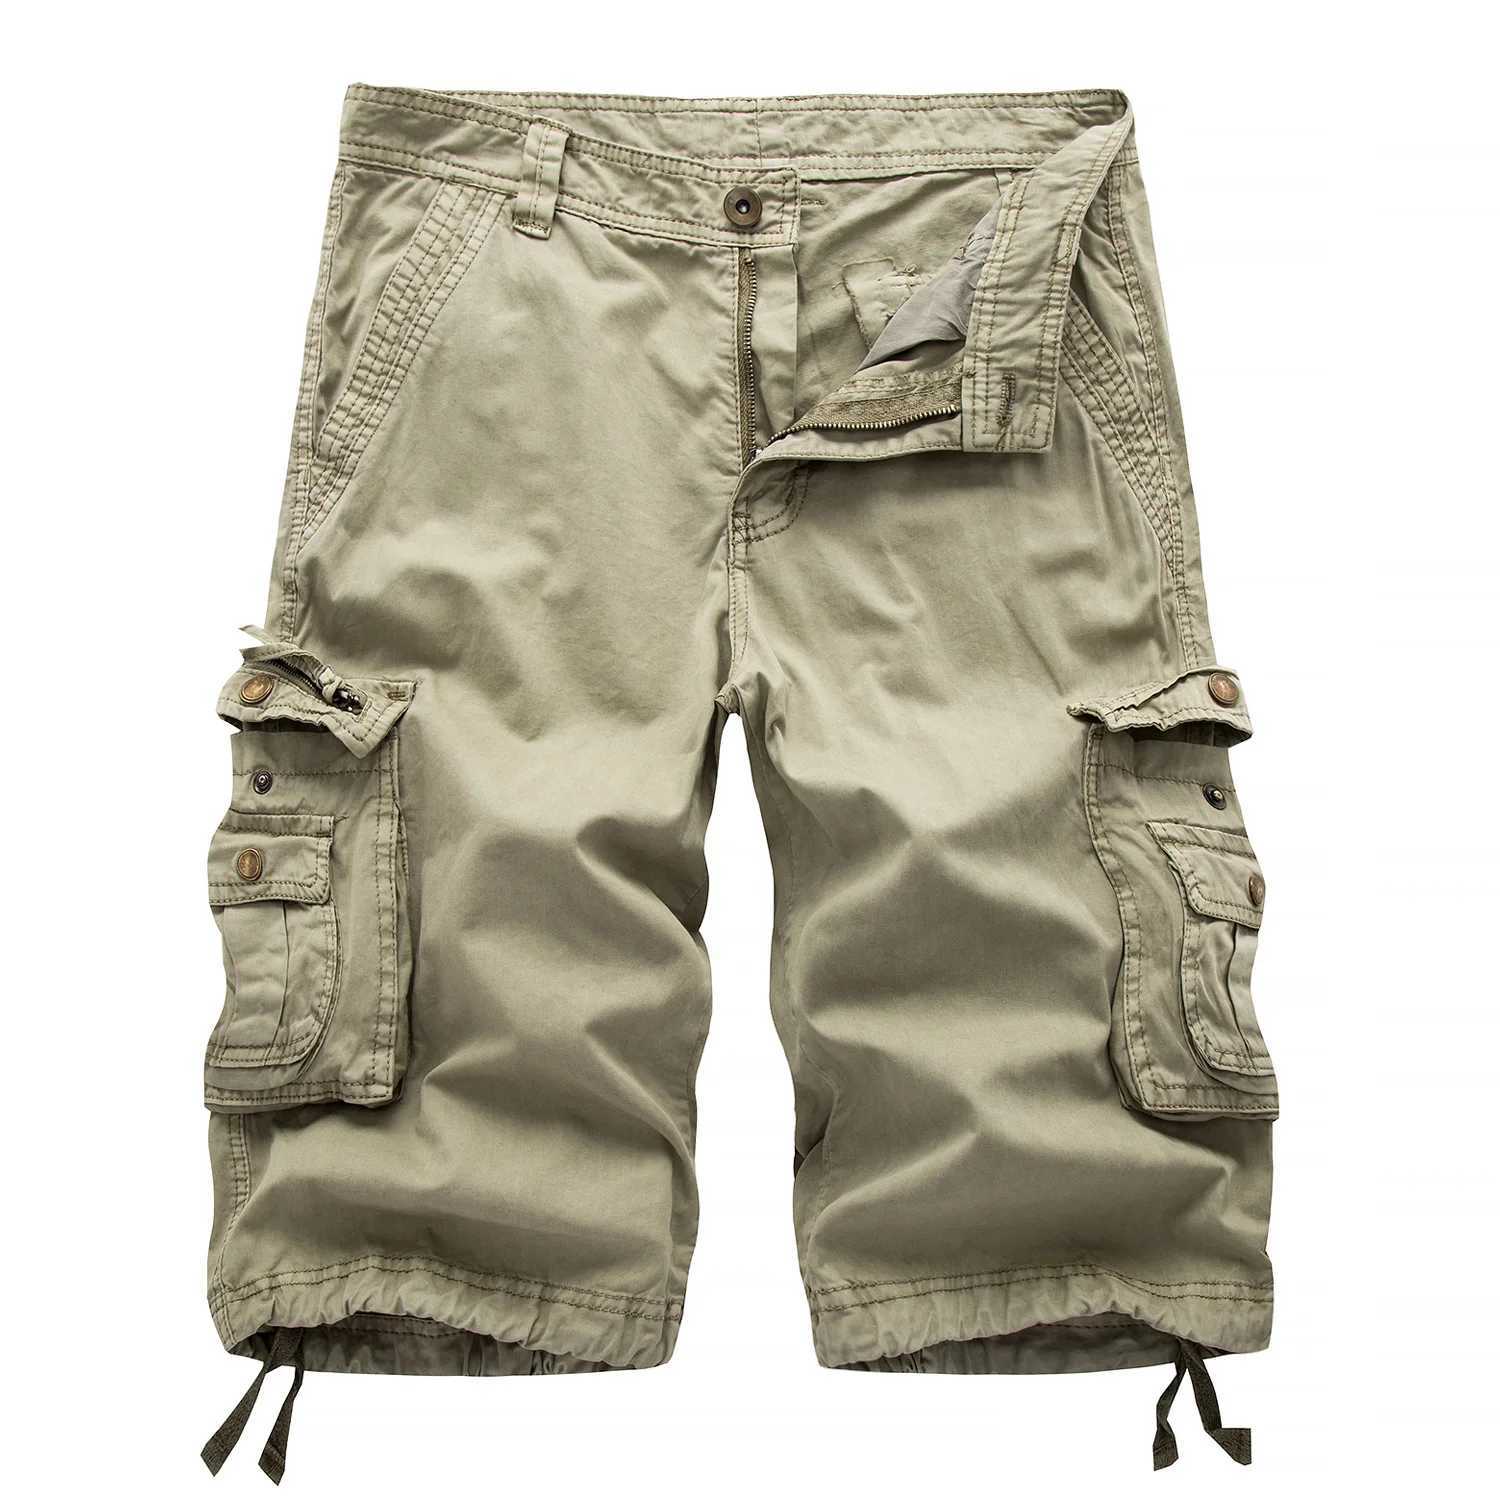 Men's Shorts Nueva marca de pantalones cortos militares de carga para hombres, pantalones cortos de carga sueltos de camuflaje de verano, pantalones cortos de verano de camuflaje para hombres, pantalones cortos de carga para hombres J240124